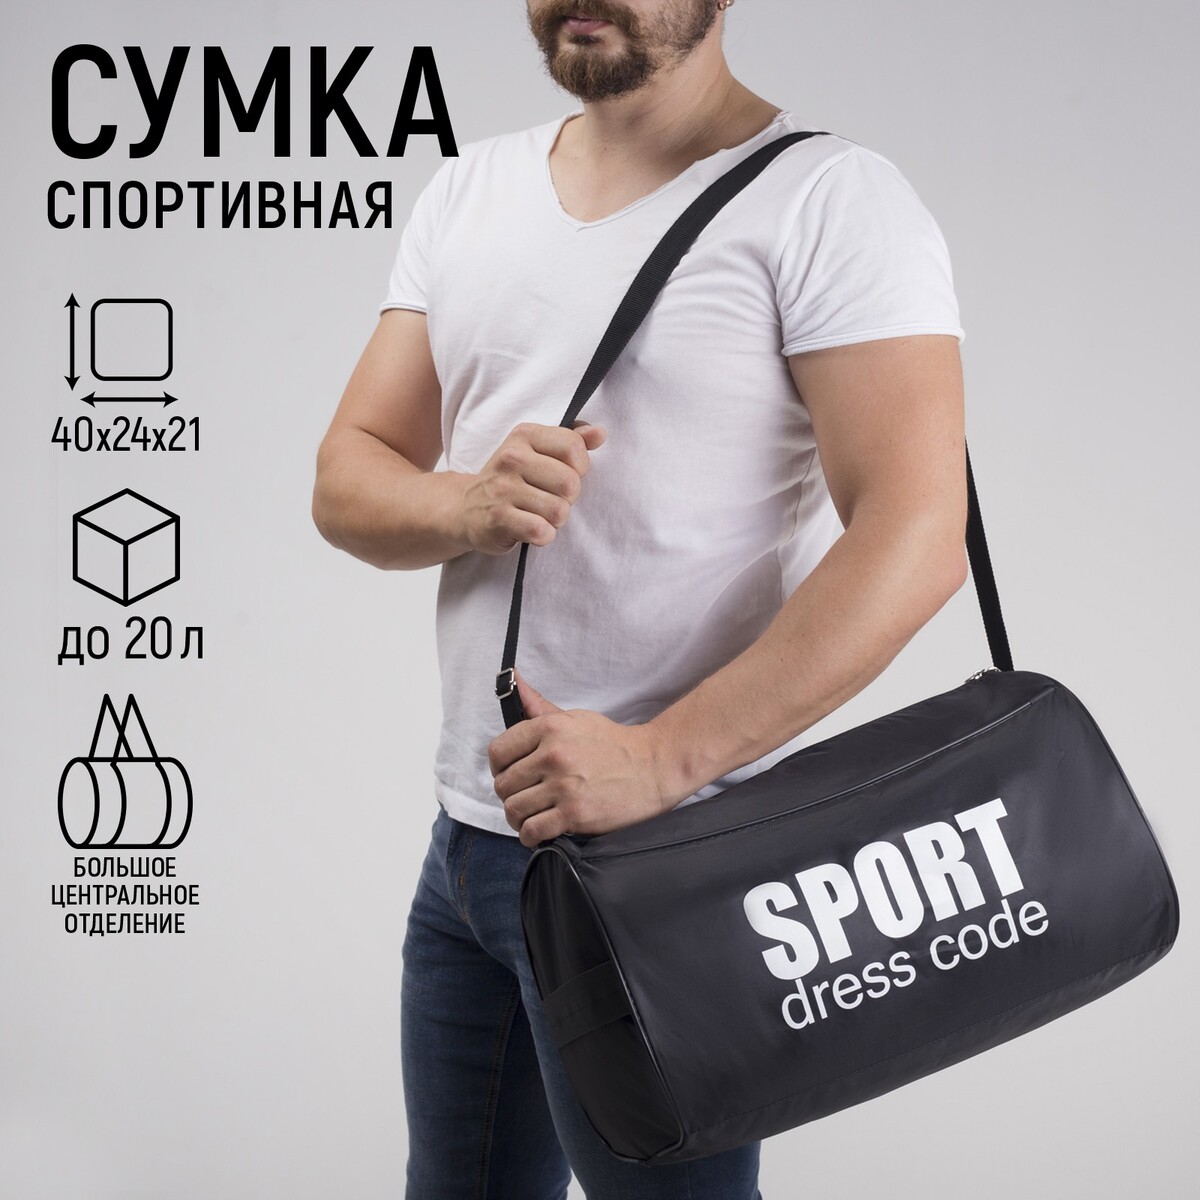 Сумка спортивная sport- dress code на молнии, наружный карман, цвет черный сумка спортивная на молнии наружный карман серый